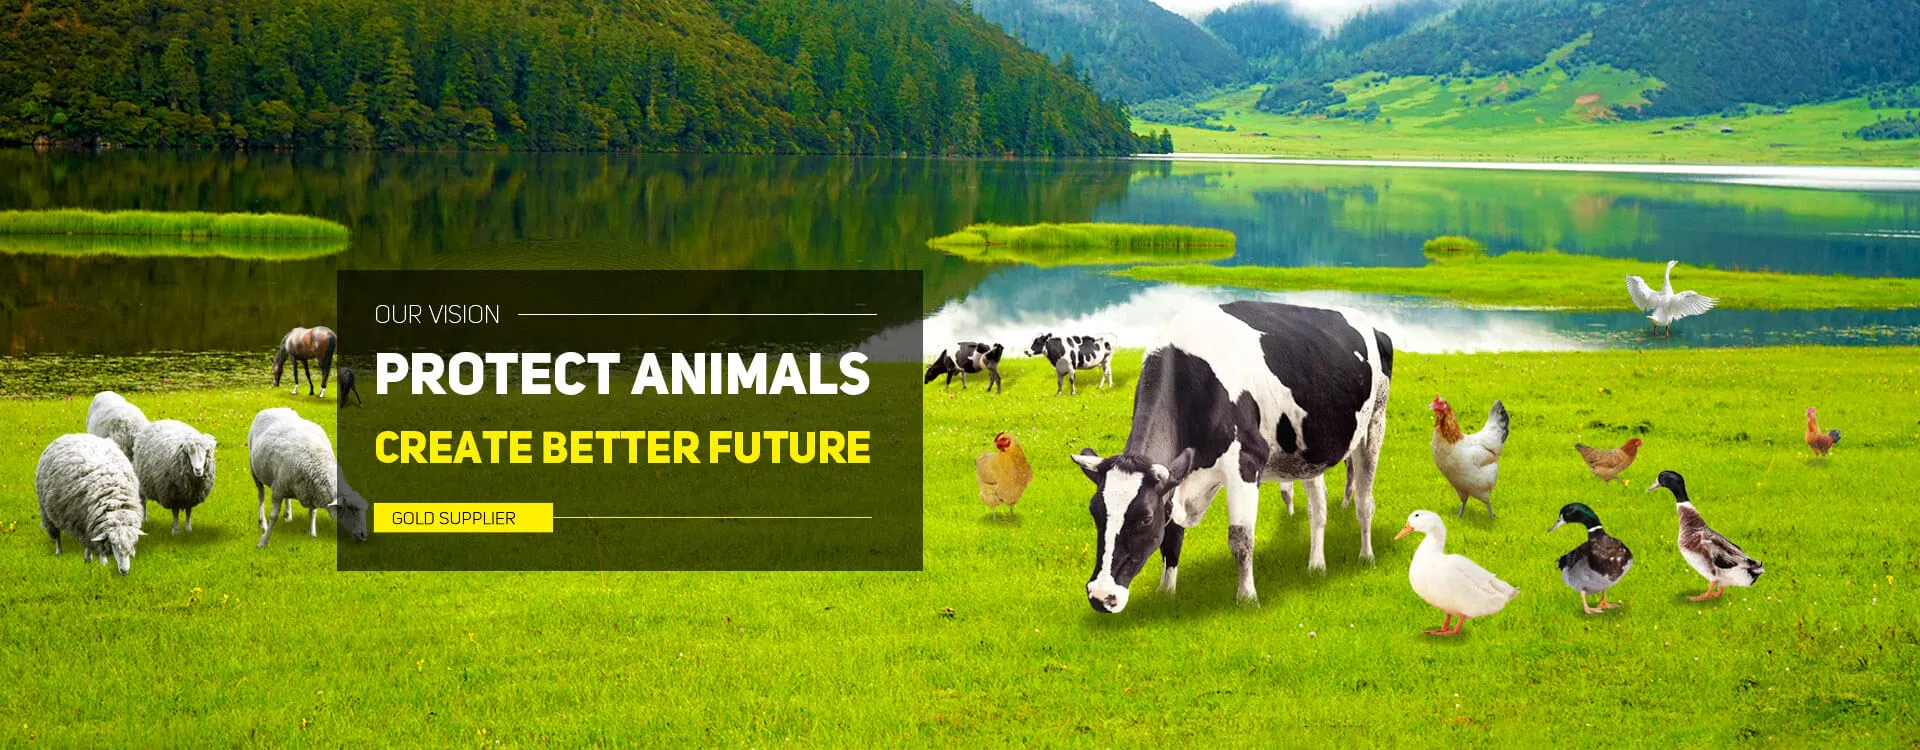 Защитите животных, создайте лучшее будущее